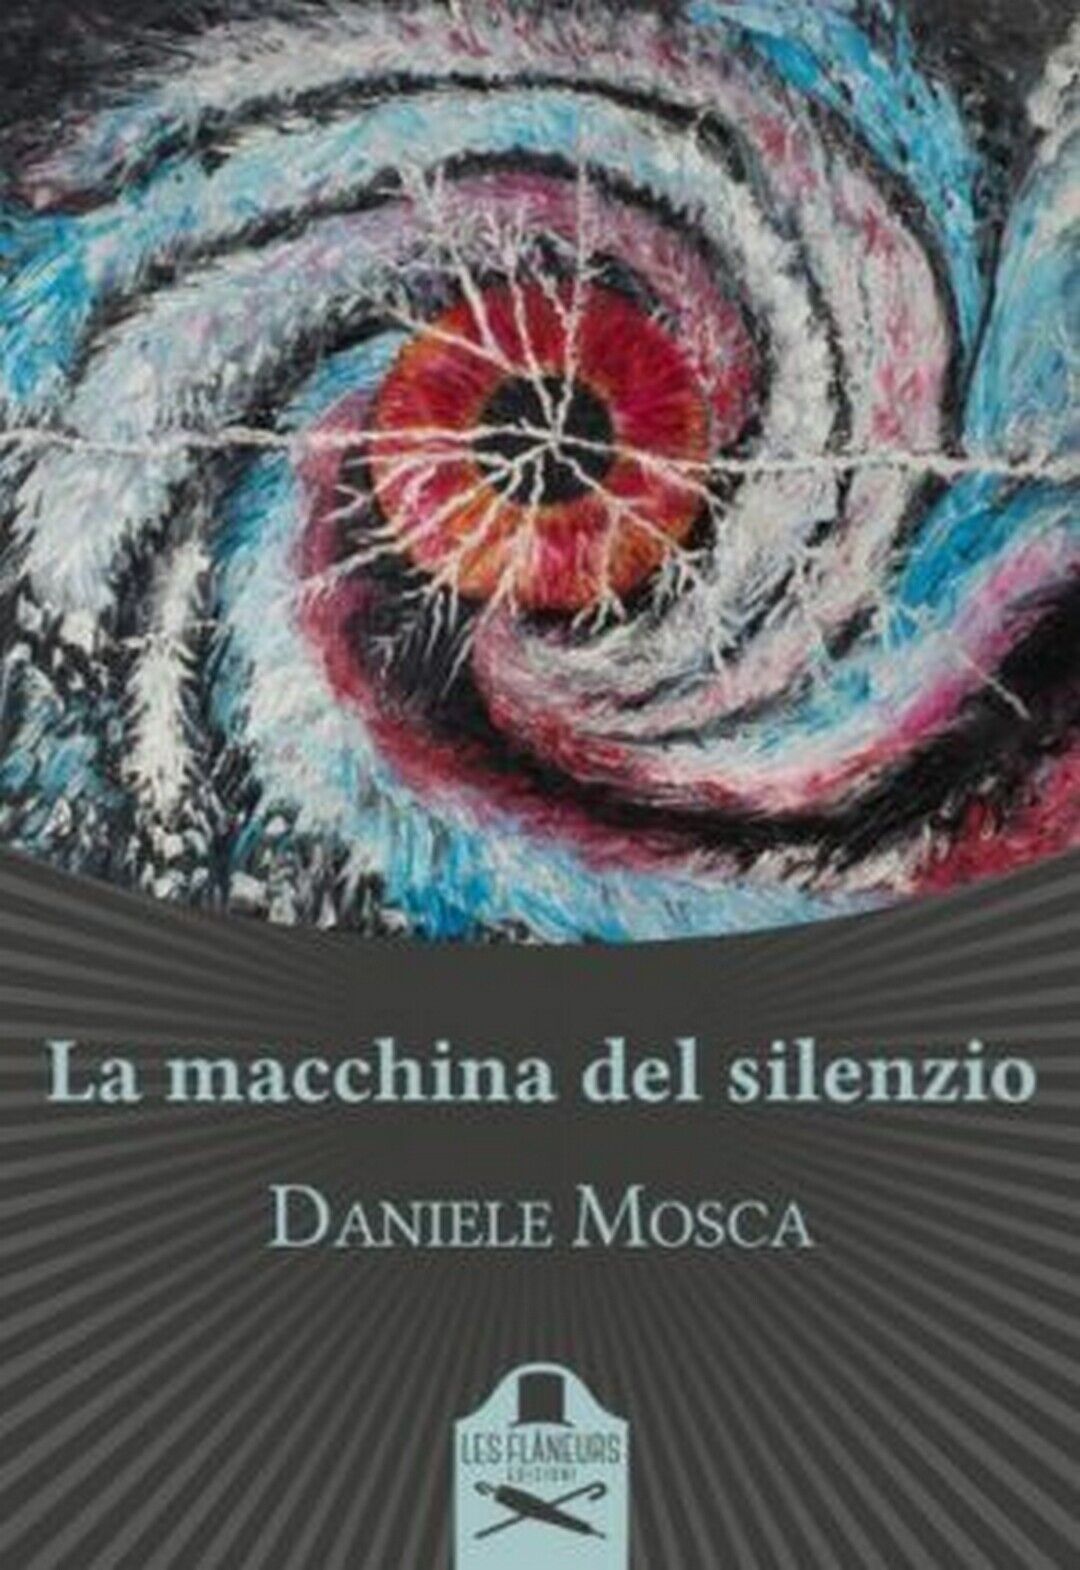 La macchina del silenzio  di Daniele Mosca ,  Flaneurs